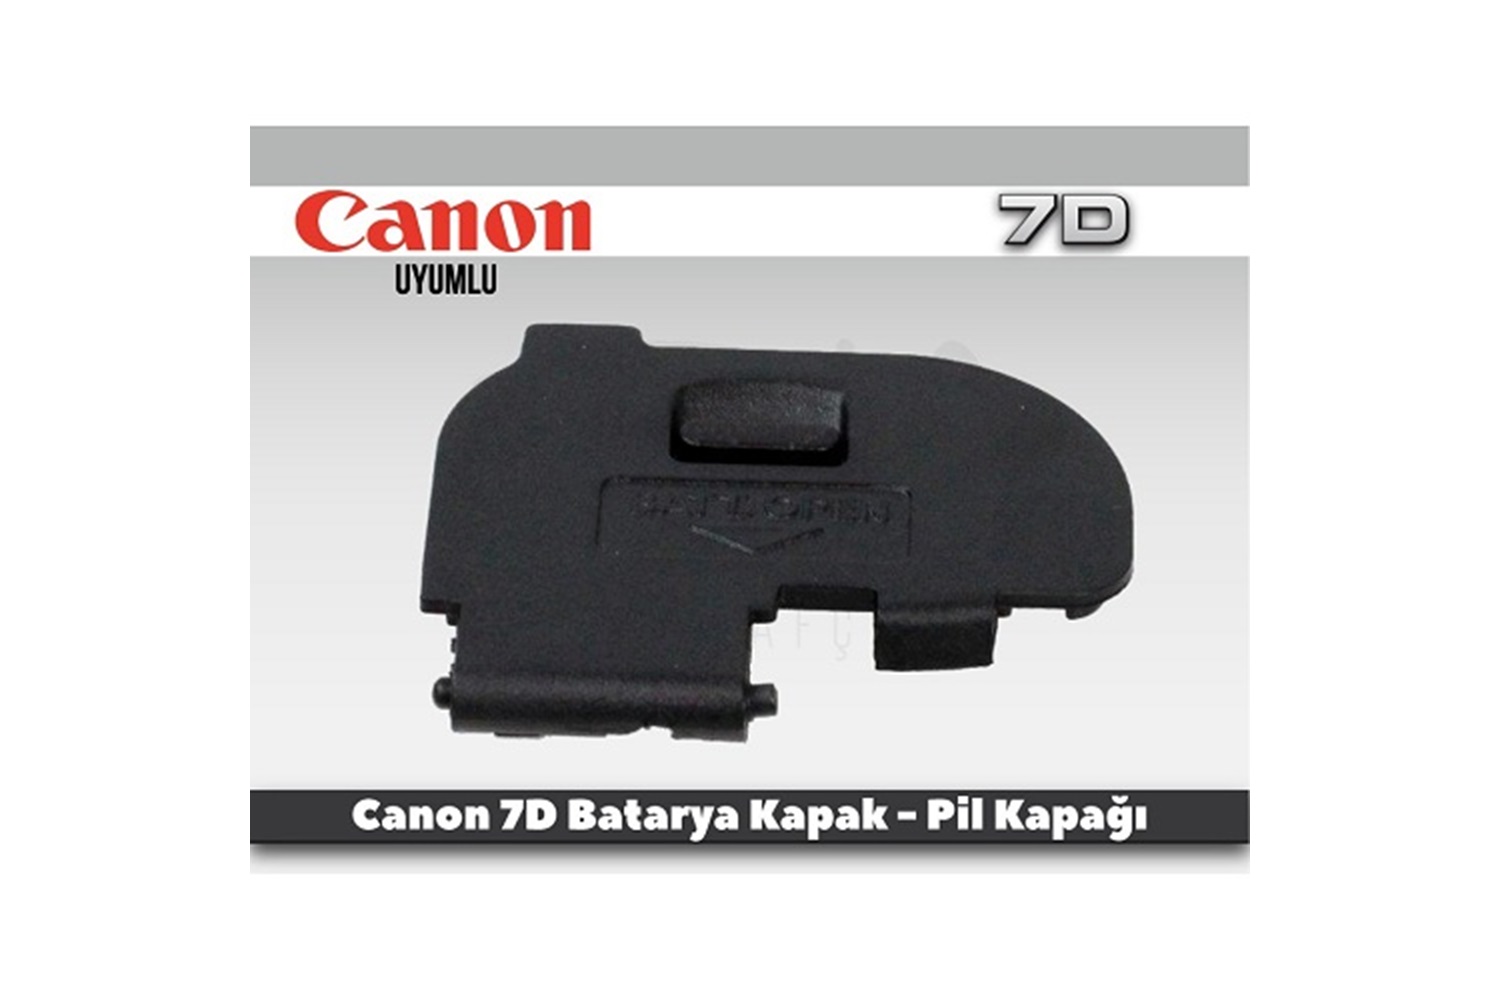 Tewise Canon 7D Uyumlu Batarya Kapak Pil Kapağı